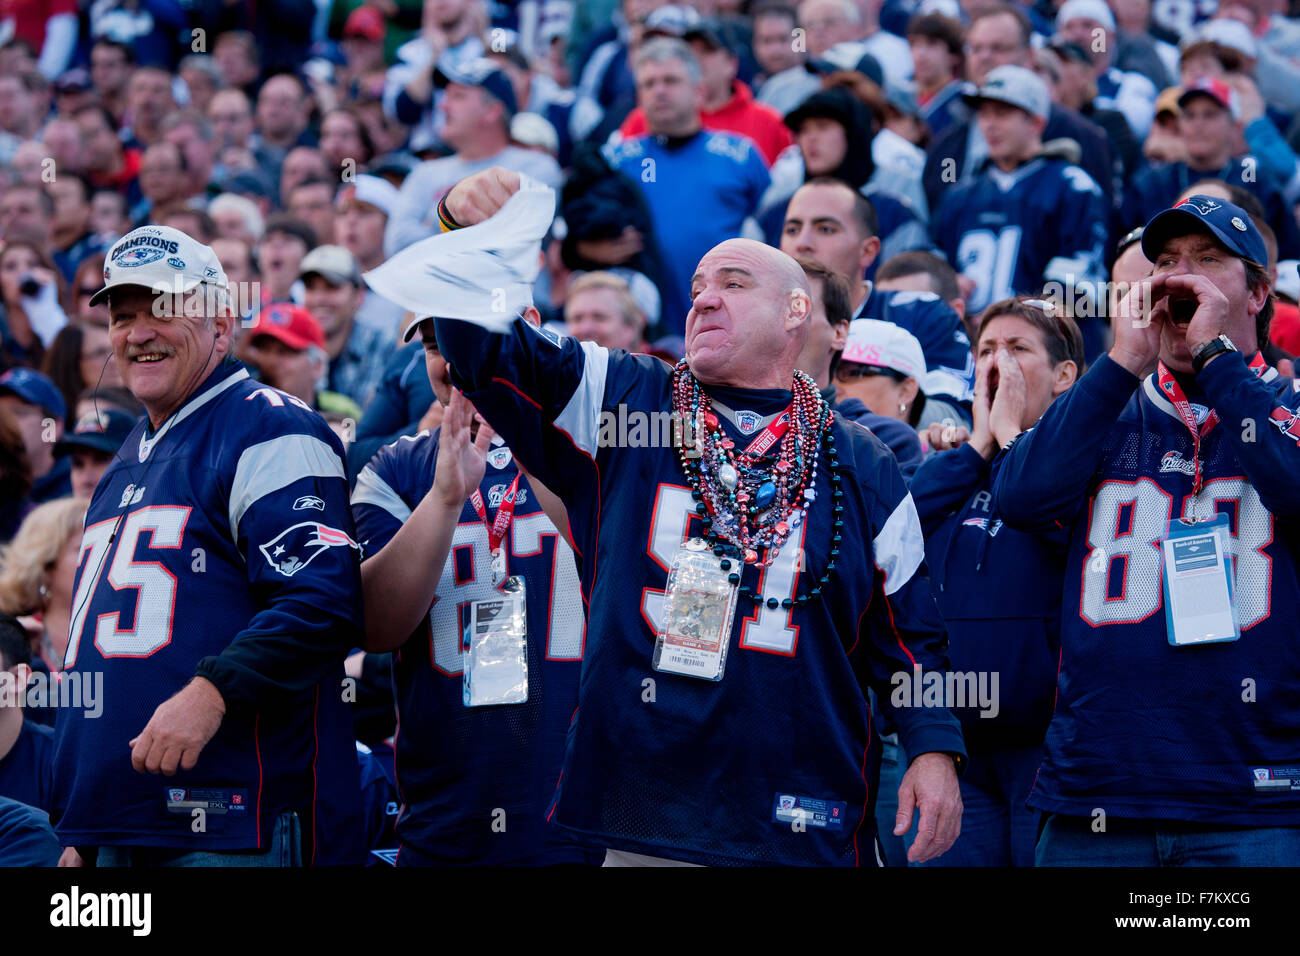 New England Patriots NFL Fußball-Fans im Gillette Stadium, die Heimat der Super Bowl champs, New England Patriots gegen die Dallas Cowboys, 16. Oktober 2011, Foxborough, Boston, MA Stockfoto